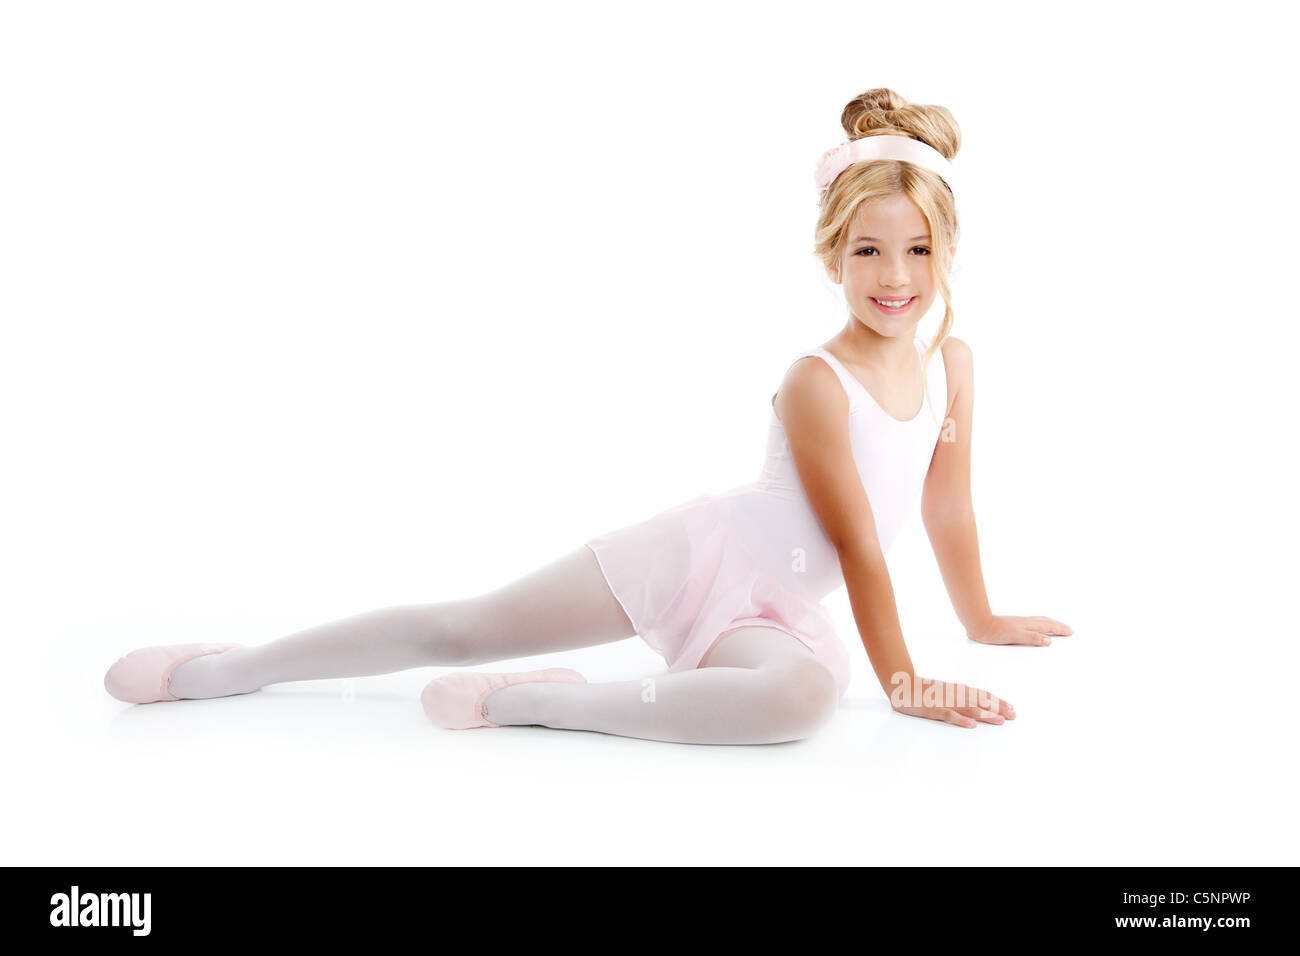 Ballerina kleine Balletttänzerin Kinder erstreckt sich auf weißen Boden sitzend Stockfoto